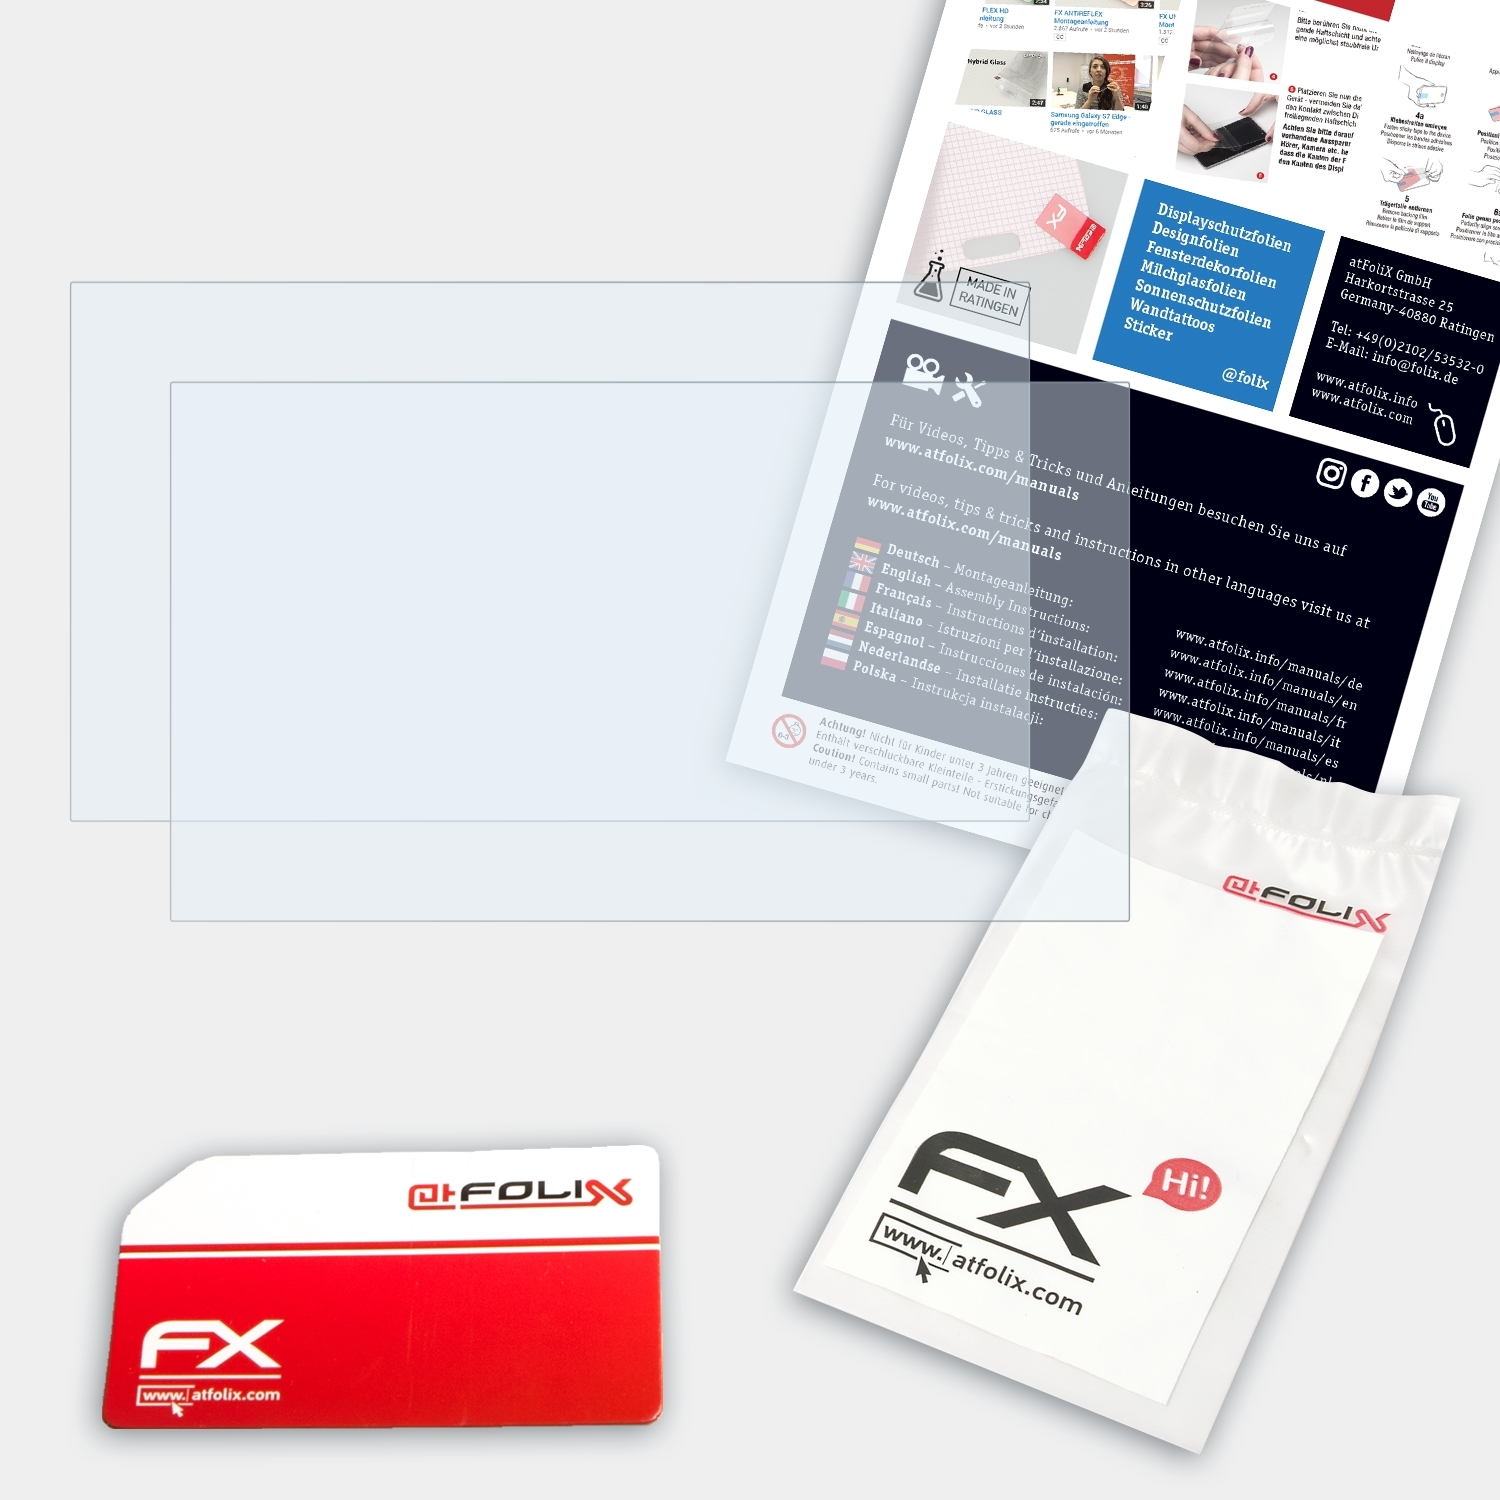 ATFOLIX 2x FX-Clear inch)) Lenovo IdeaPad 320S (13,3 Displayschutz(für